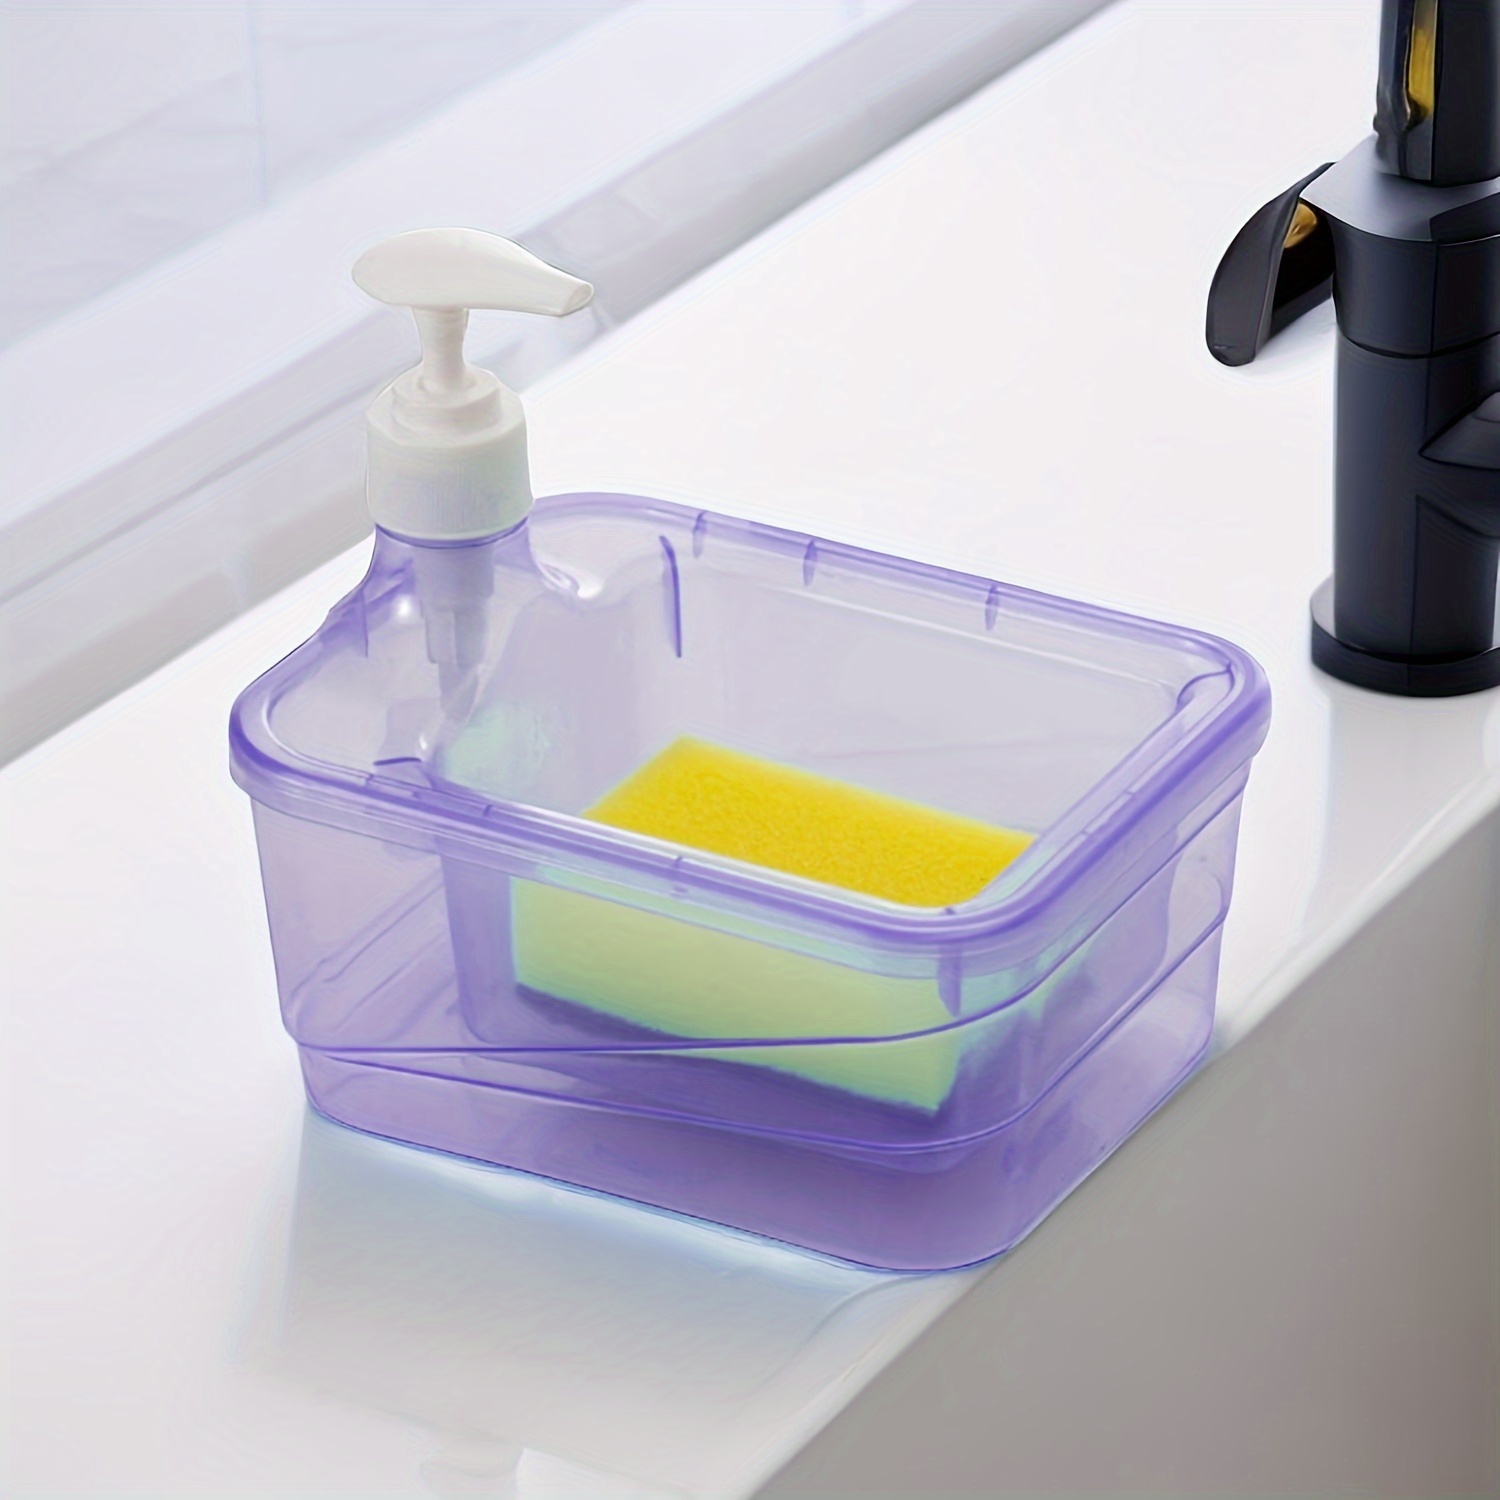 automatic soap dispenser bottle for liquid soap kitchen sponge